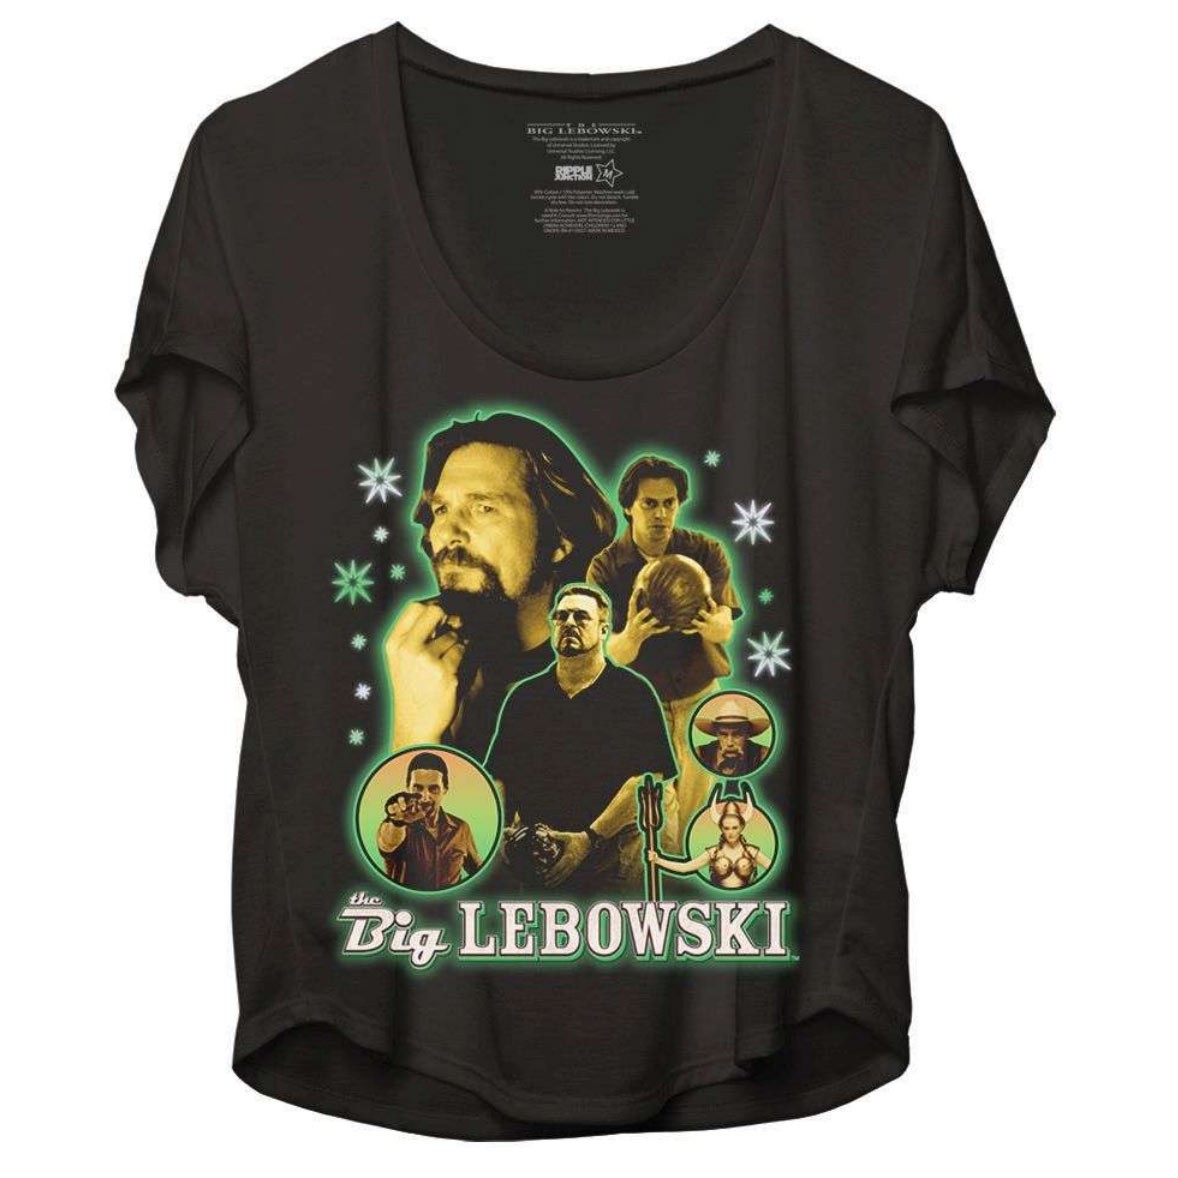 Big Lebowski Women's Crop Top Bowling T-Shirt.